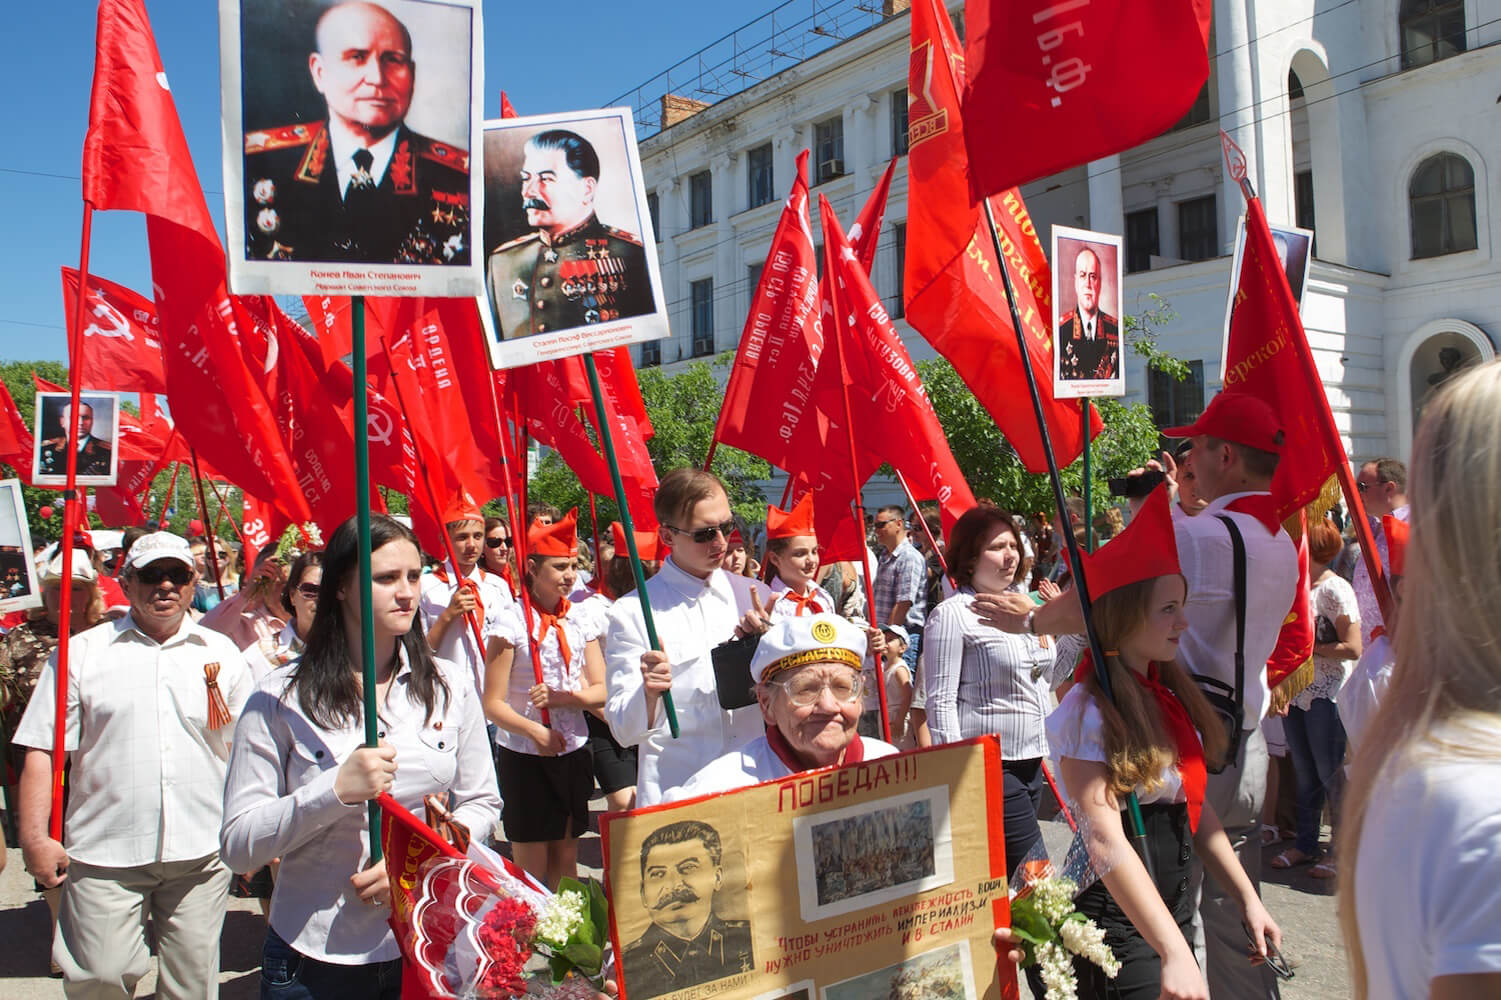 Drost - Pro-Russische betoging in de Oekraïnse stad Sebastopol op de Krim in 2013. Gert-Jan Peddemors - Flickr